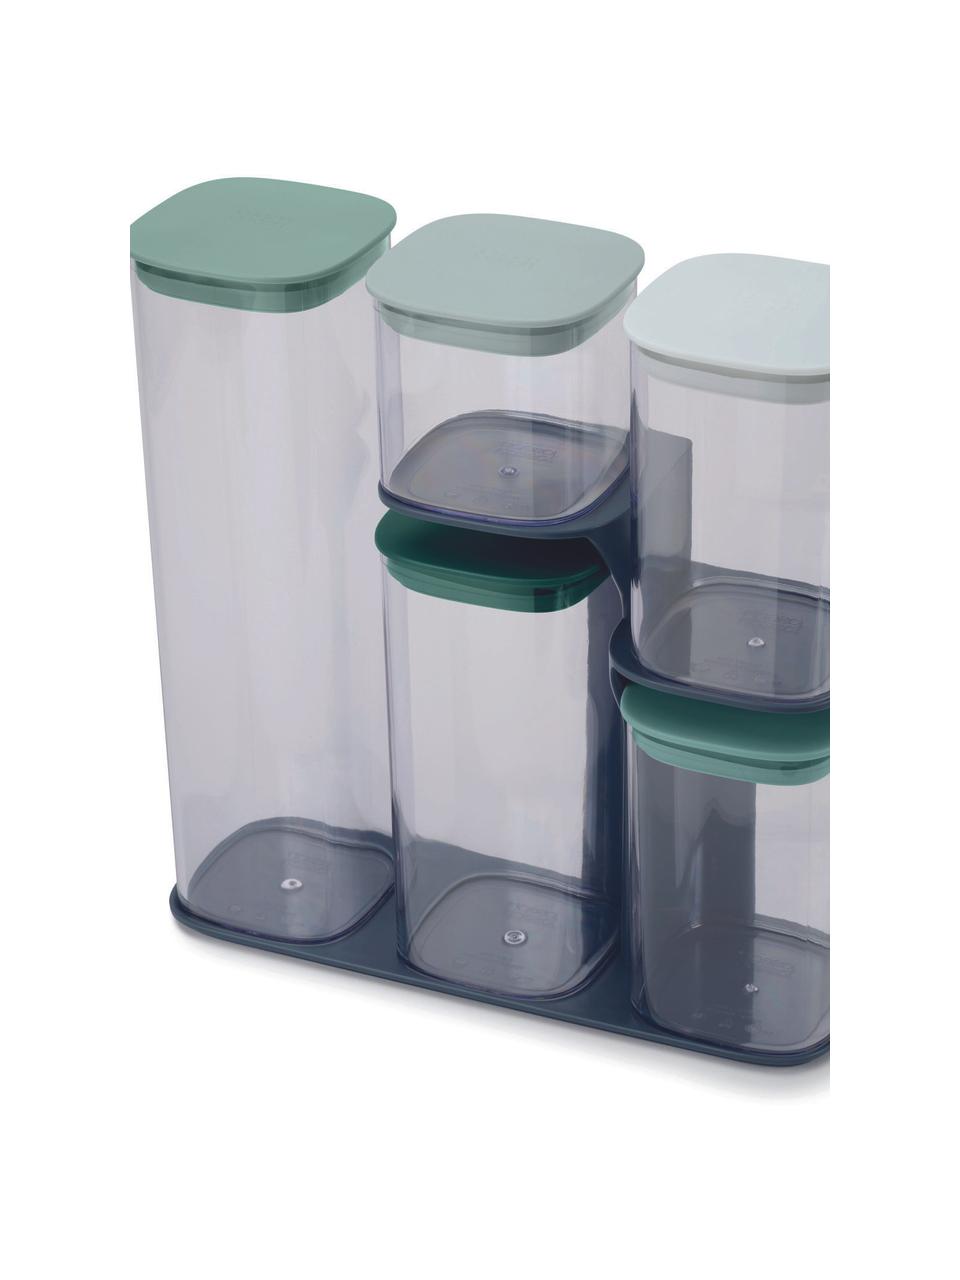 Aufbewahrungsbehälter Podium, 6er-Set, SAN-Kunststoff, Silikon, HIPS-Kunststoff, Grün, Transparent, Set mit verschiedenen Größen